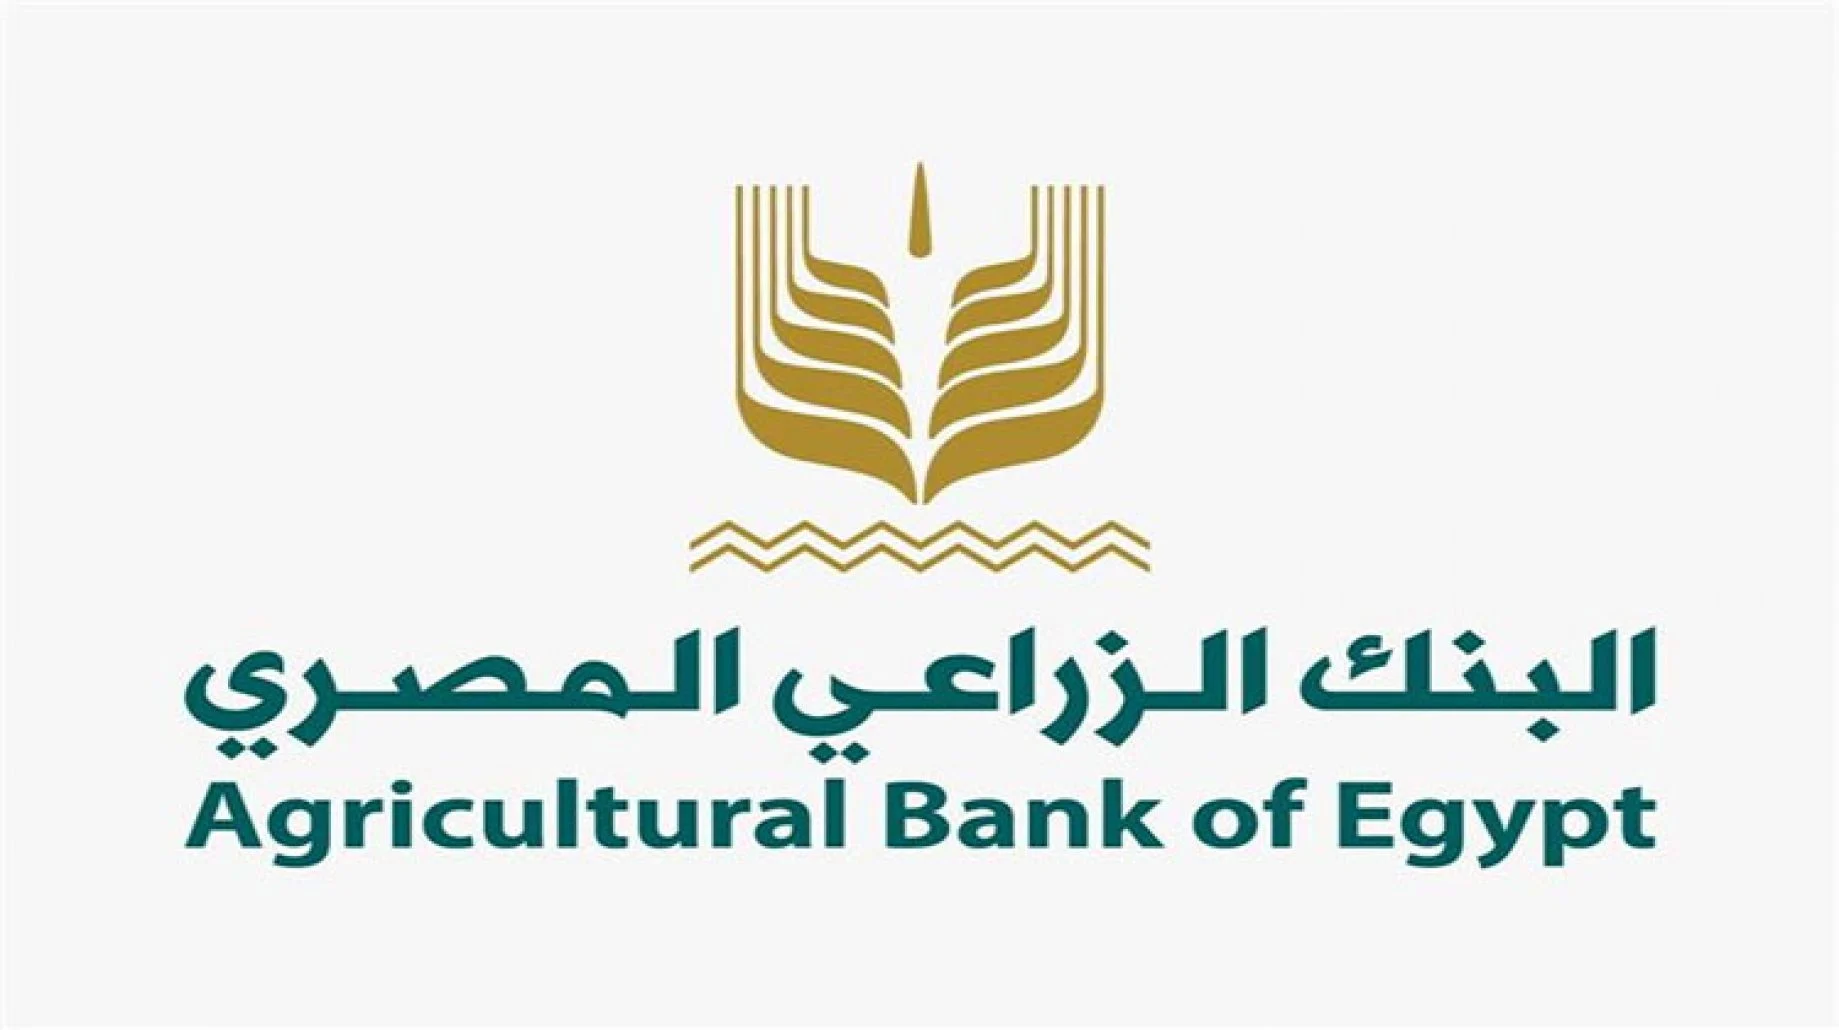 خدمات البنك الزراعي المصري الاجتماعية